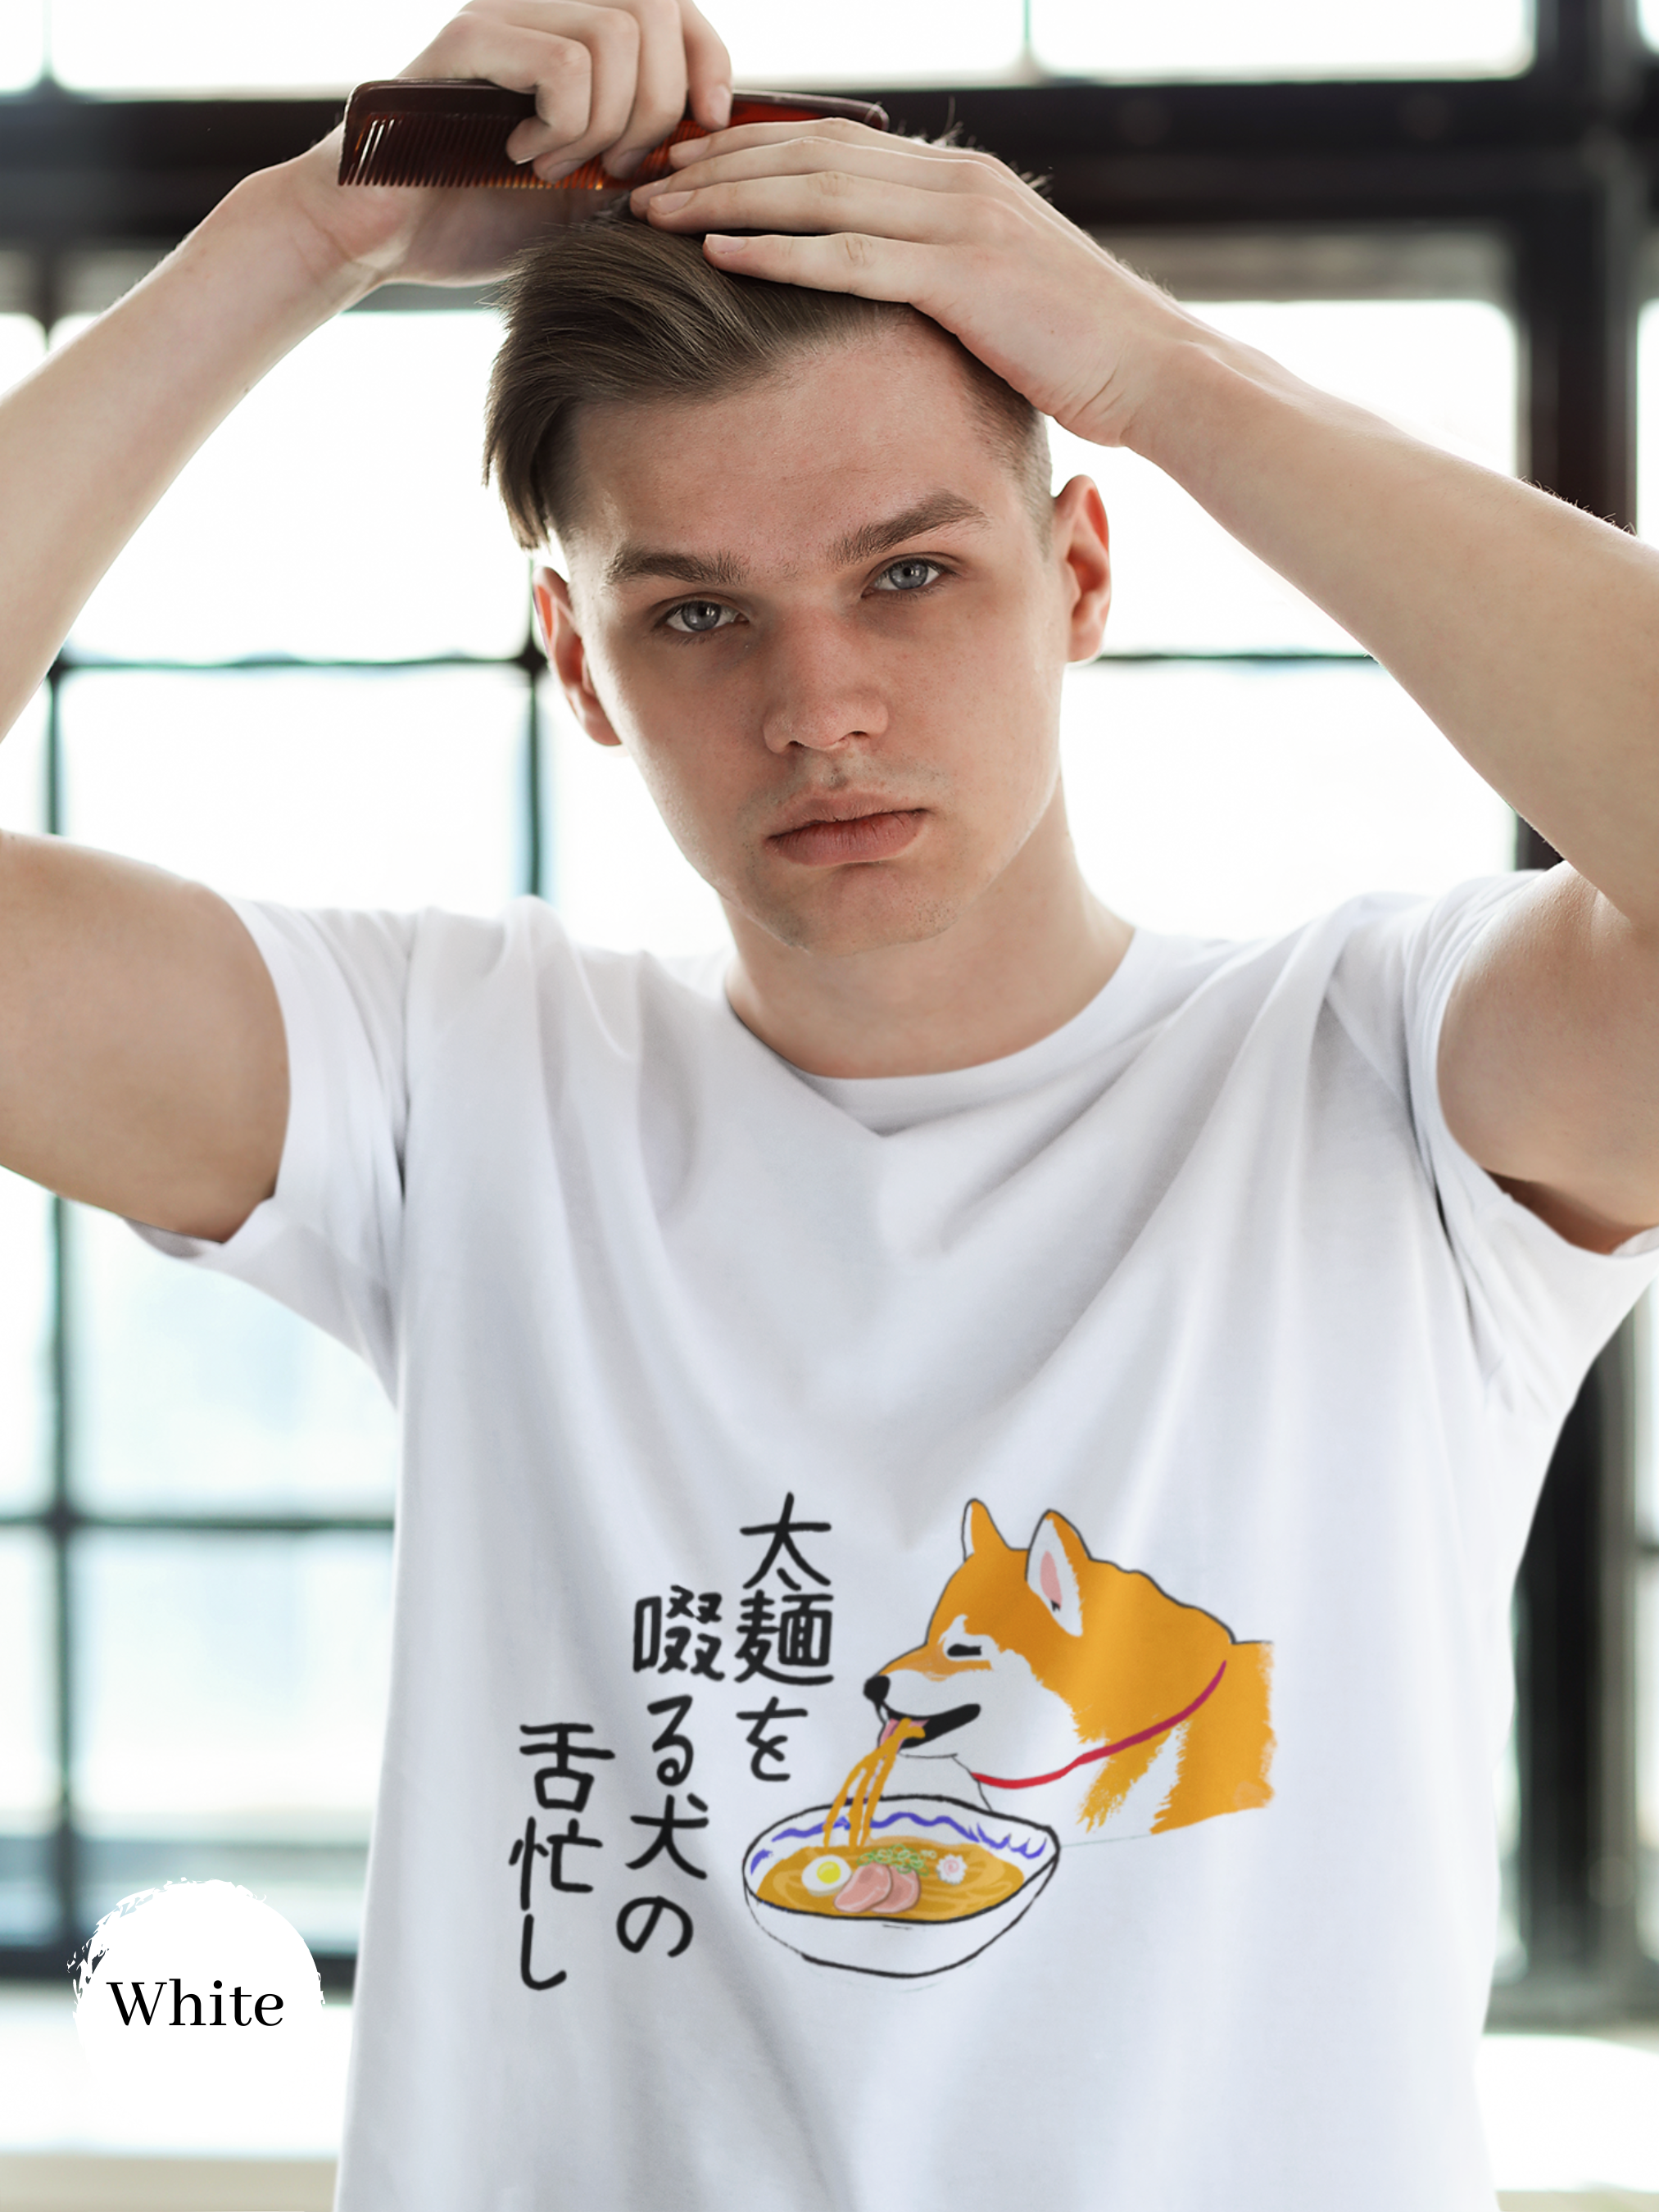 Ramen T-shirt with Shiba Inu Haiku: Japanese Ramen Art Foodie Shirt